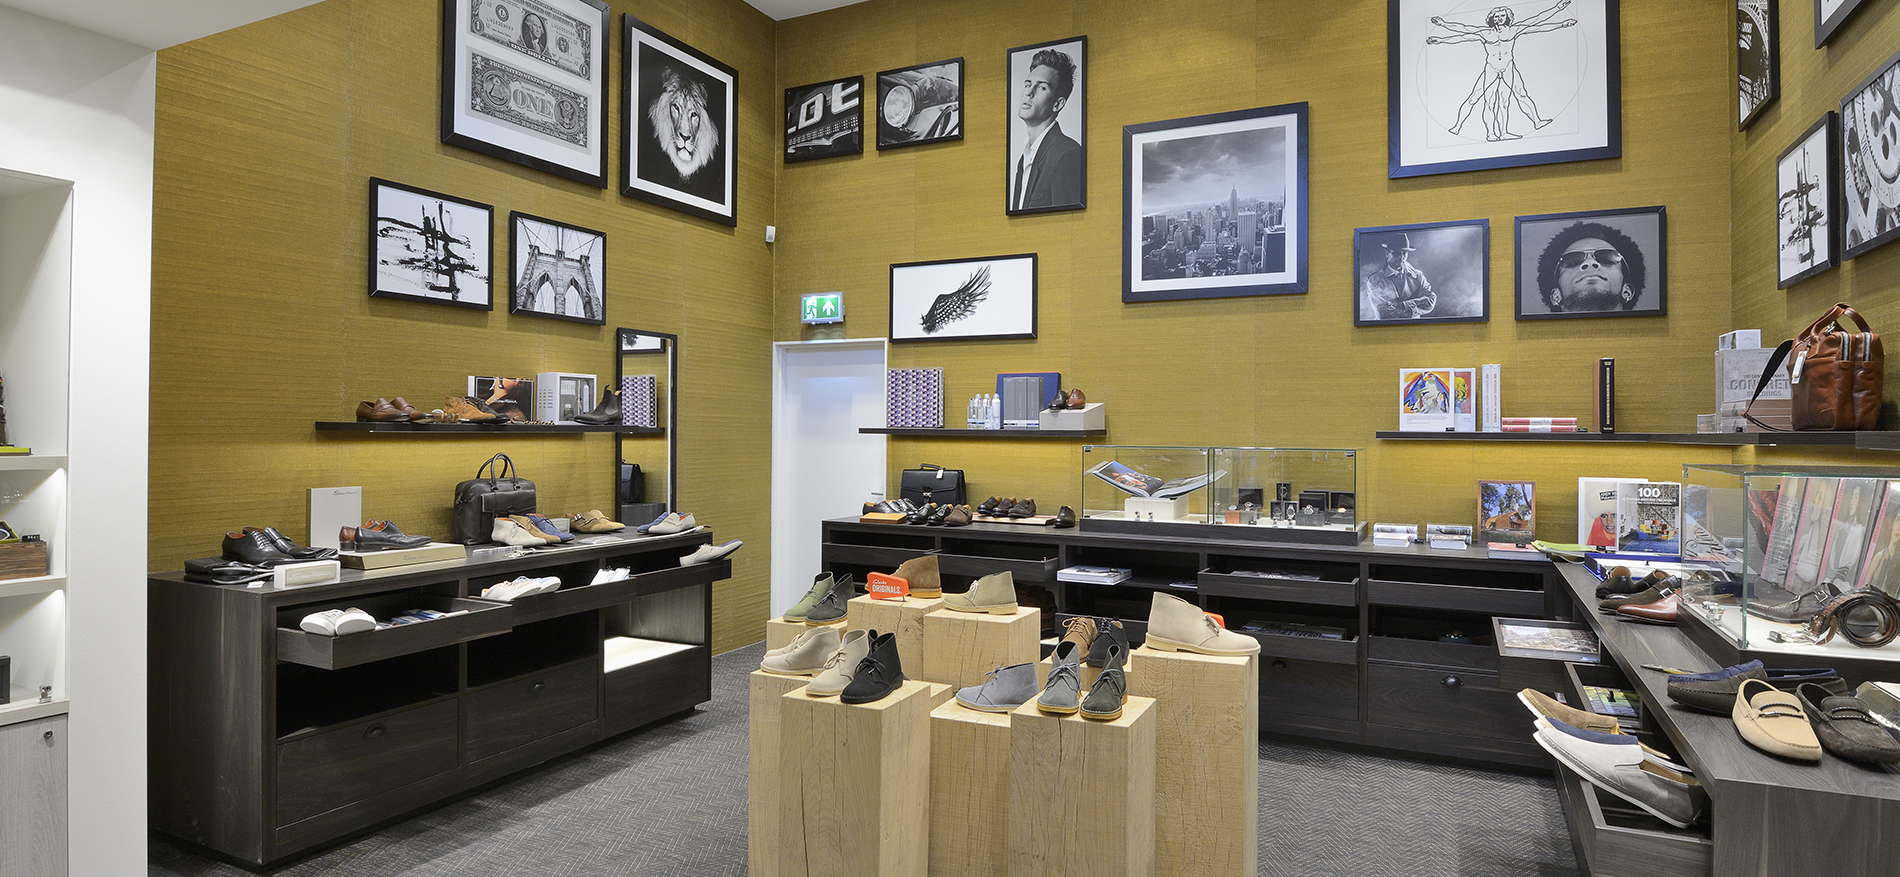 Shuz in Wassenaar: Retail design shoes conceptstore - 